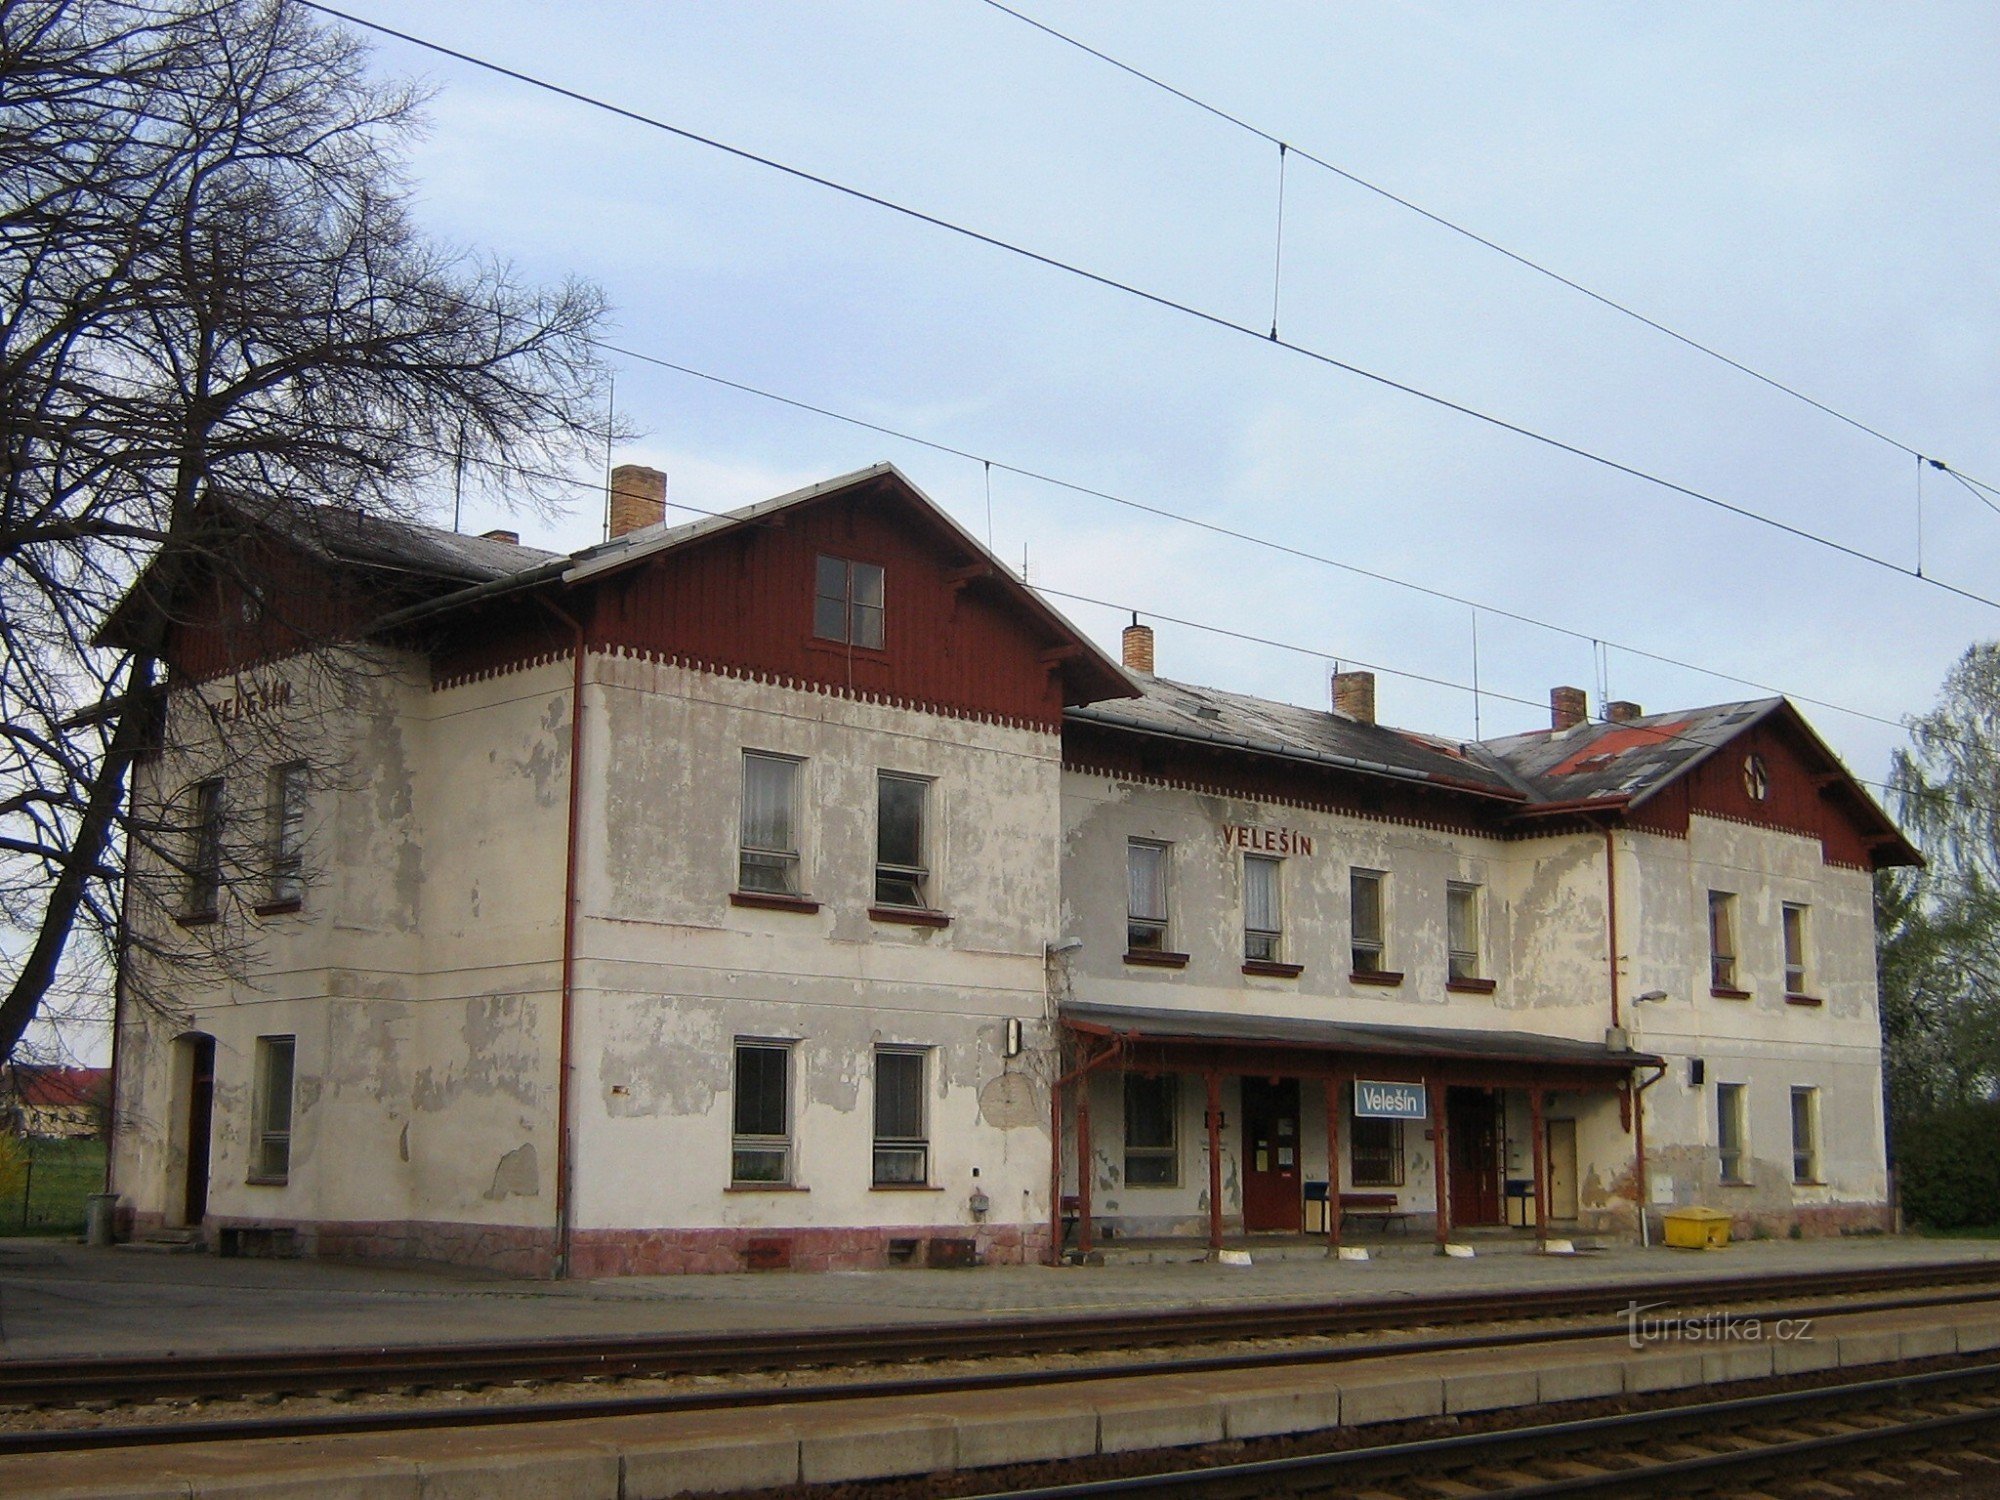 Velesín - stazione ferroviaria